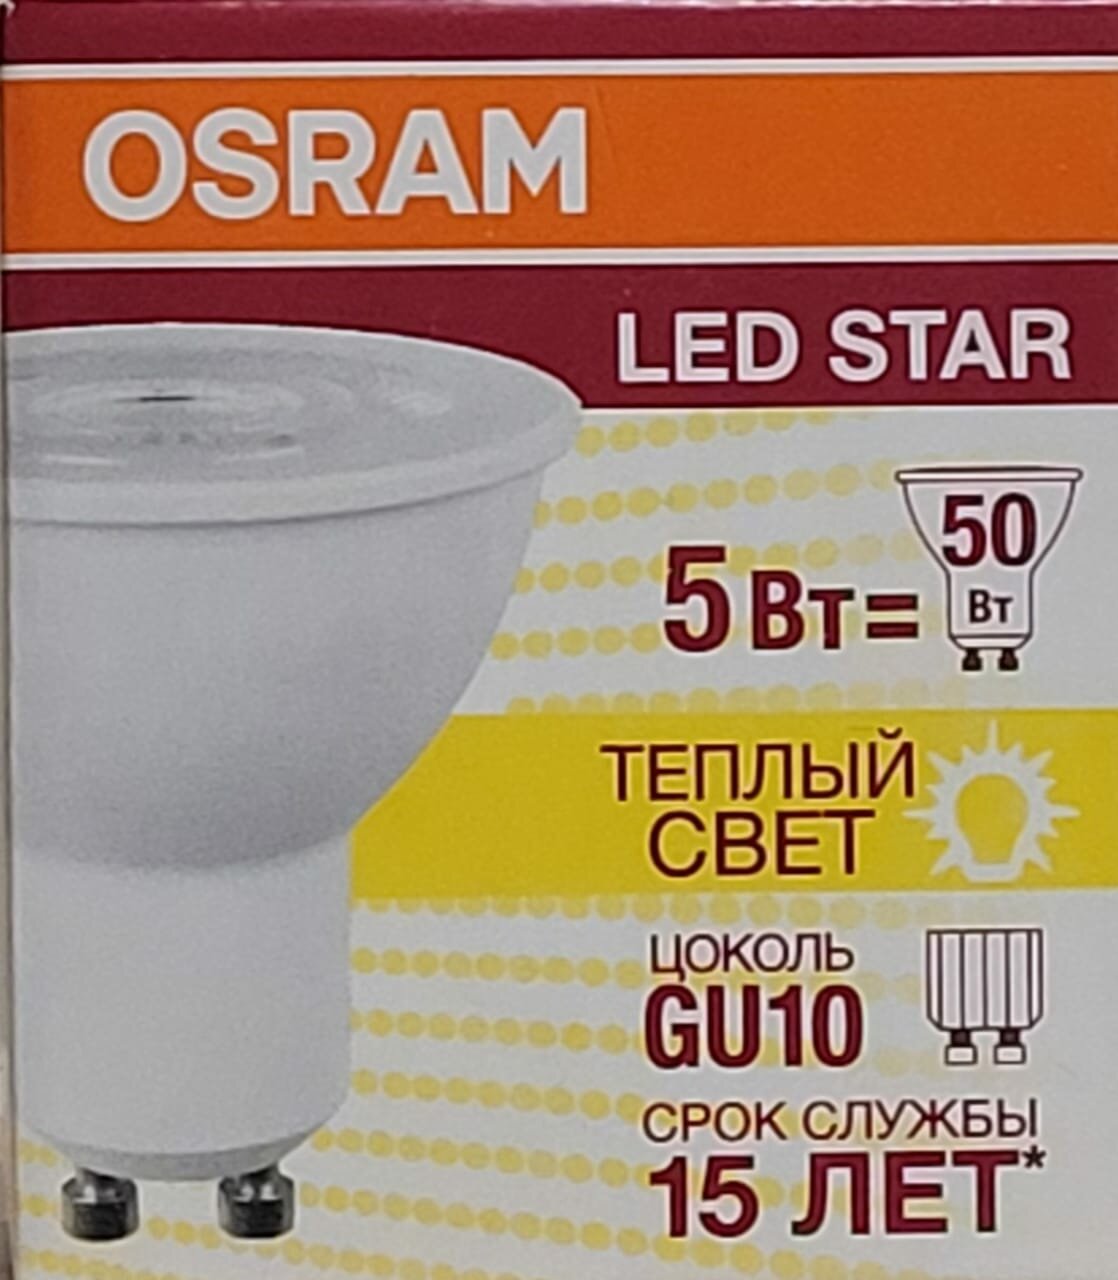 Лампа светодиодная OSRAM LED Star, GU10, PAR16, 5 Вт, 3000 К